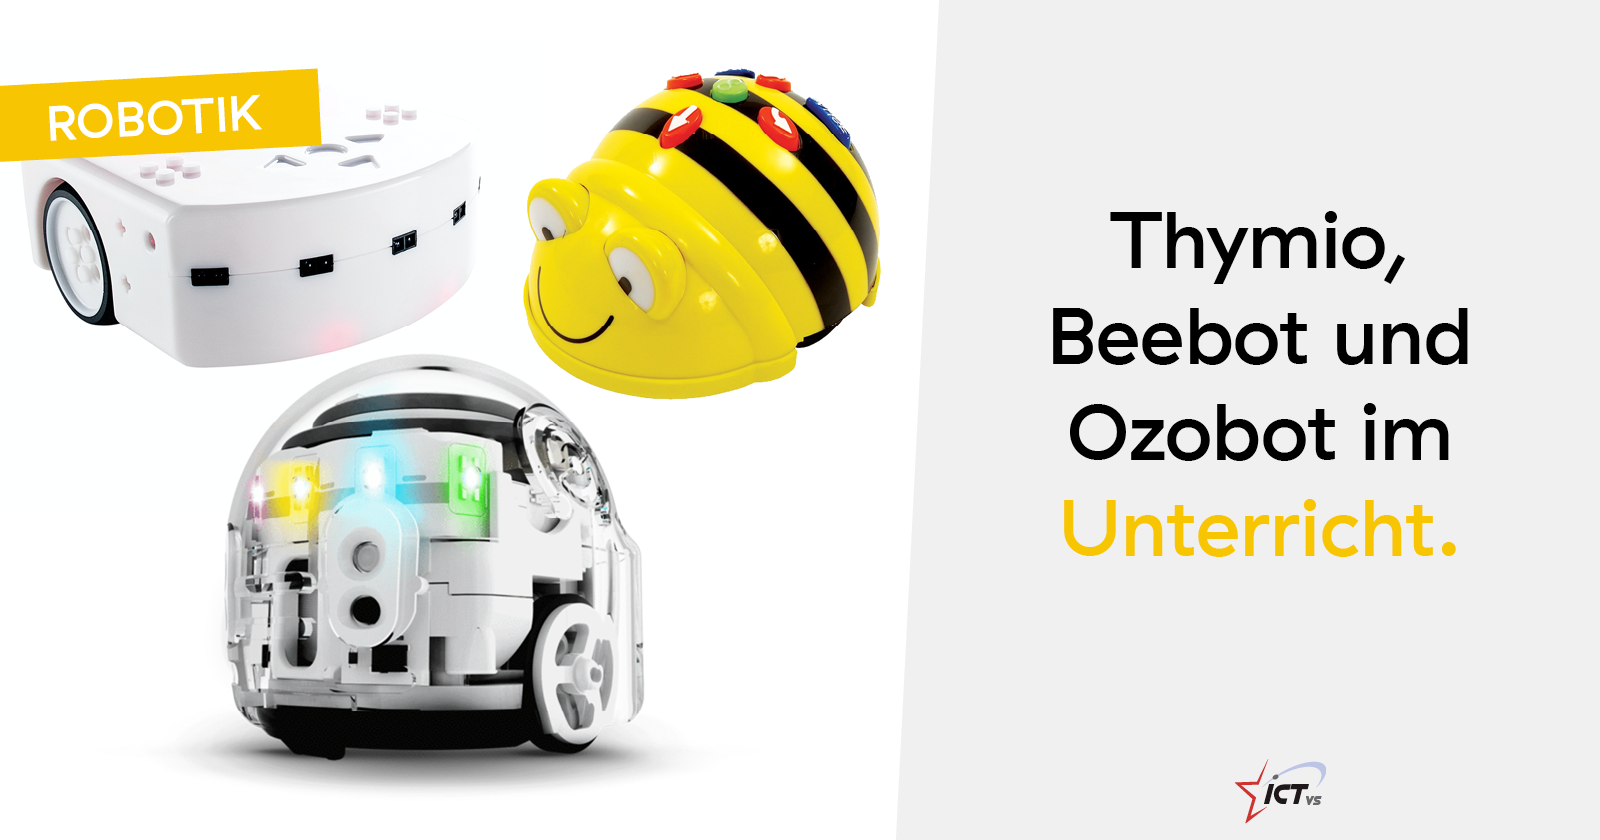 Thymio, Beebot und Ozobot im Unterricht